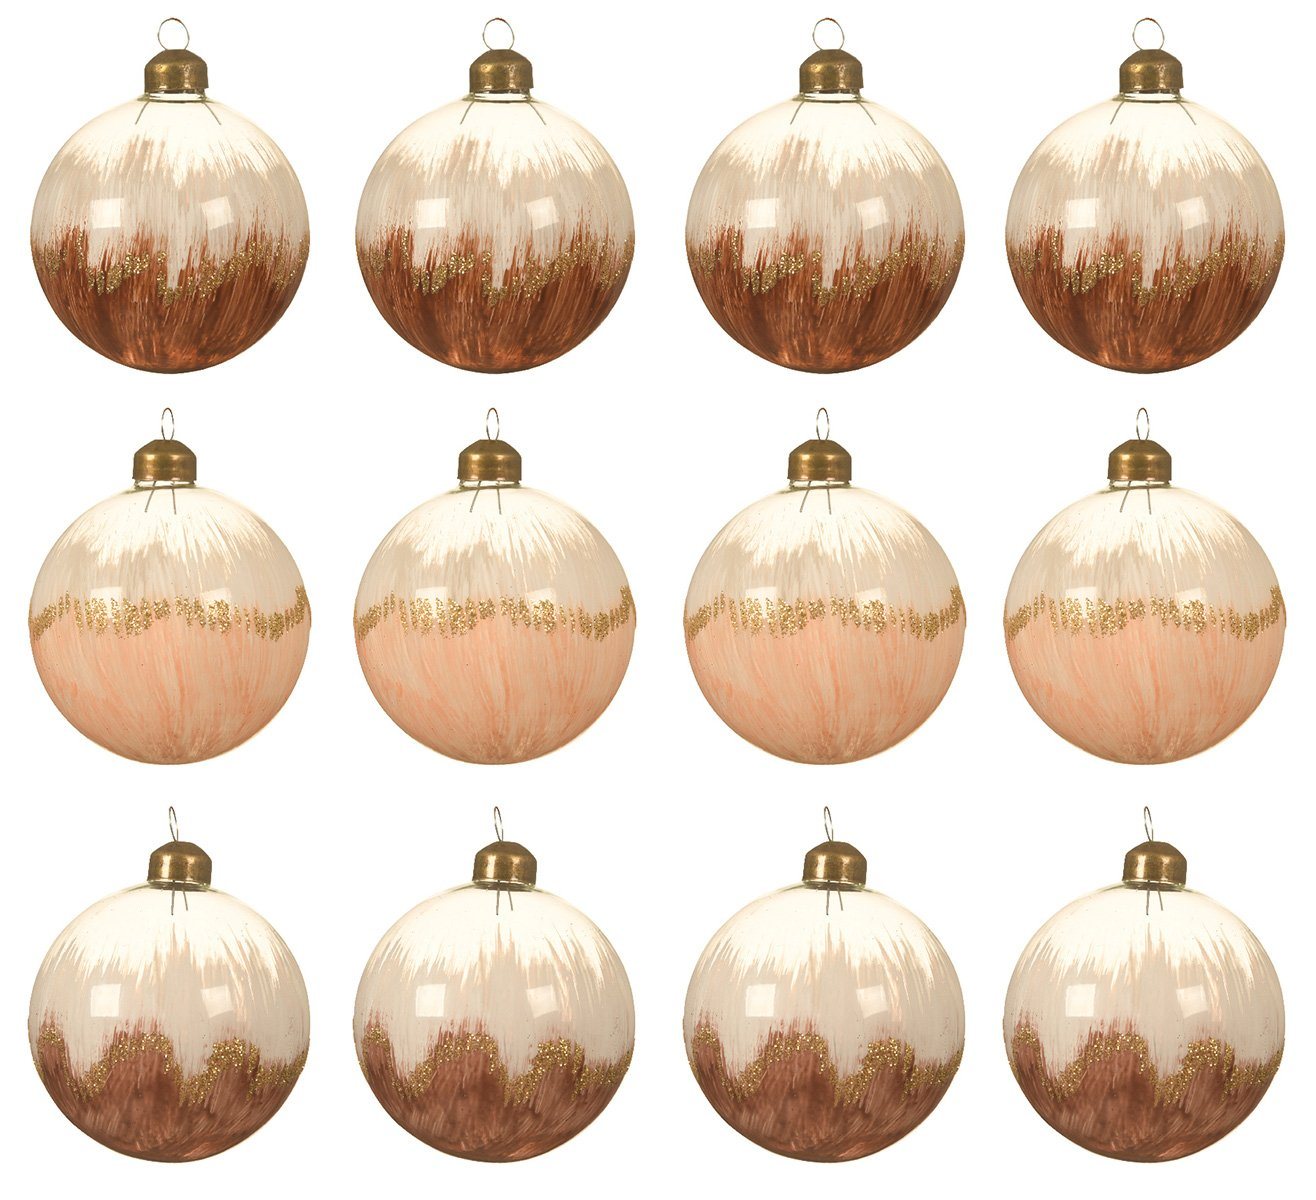 Decoris season decorations Weihnachtsbaumkugel, Weihnachtskugeln Glas 8cm bemalt mit Verlauf 12er Set braun / beige von Decoris season decorations